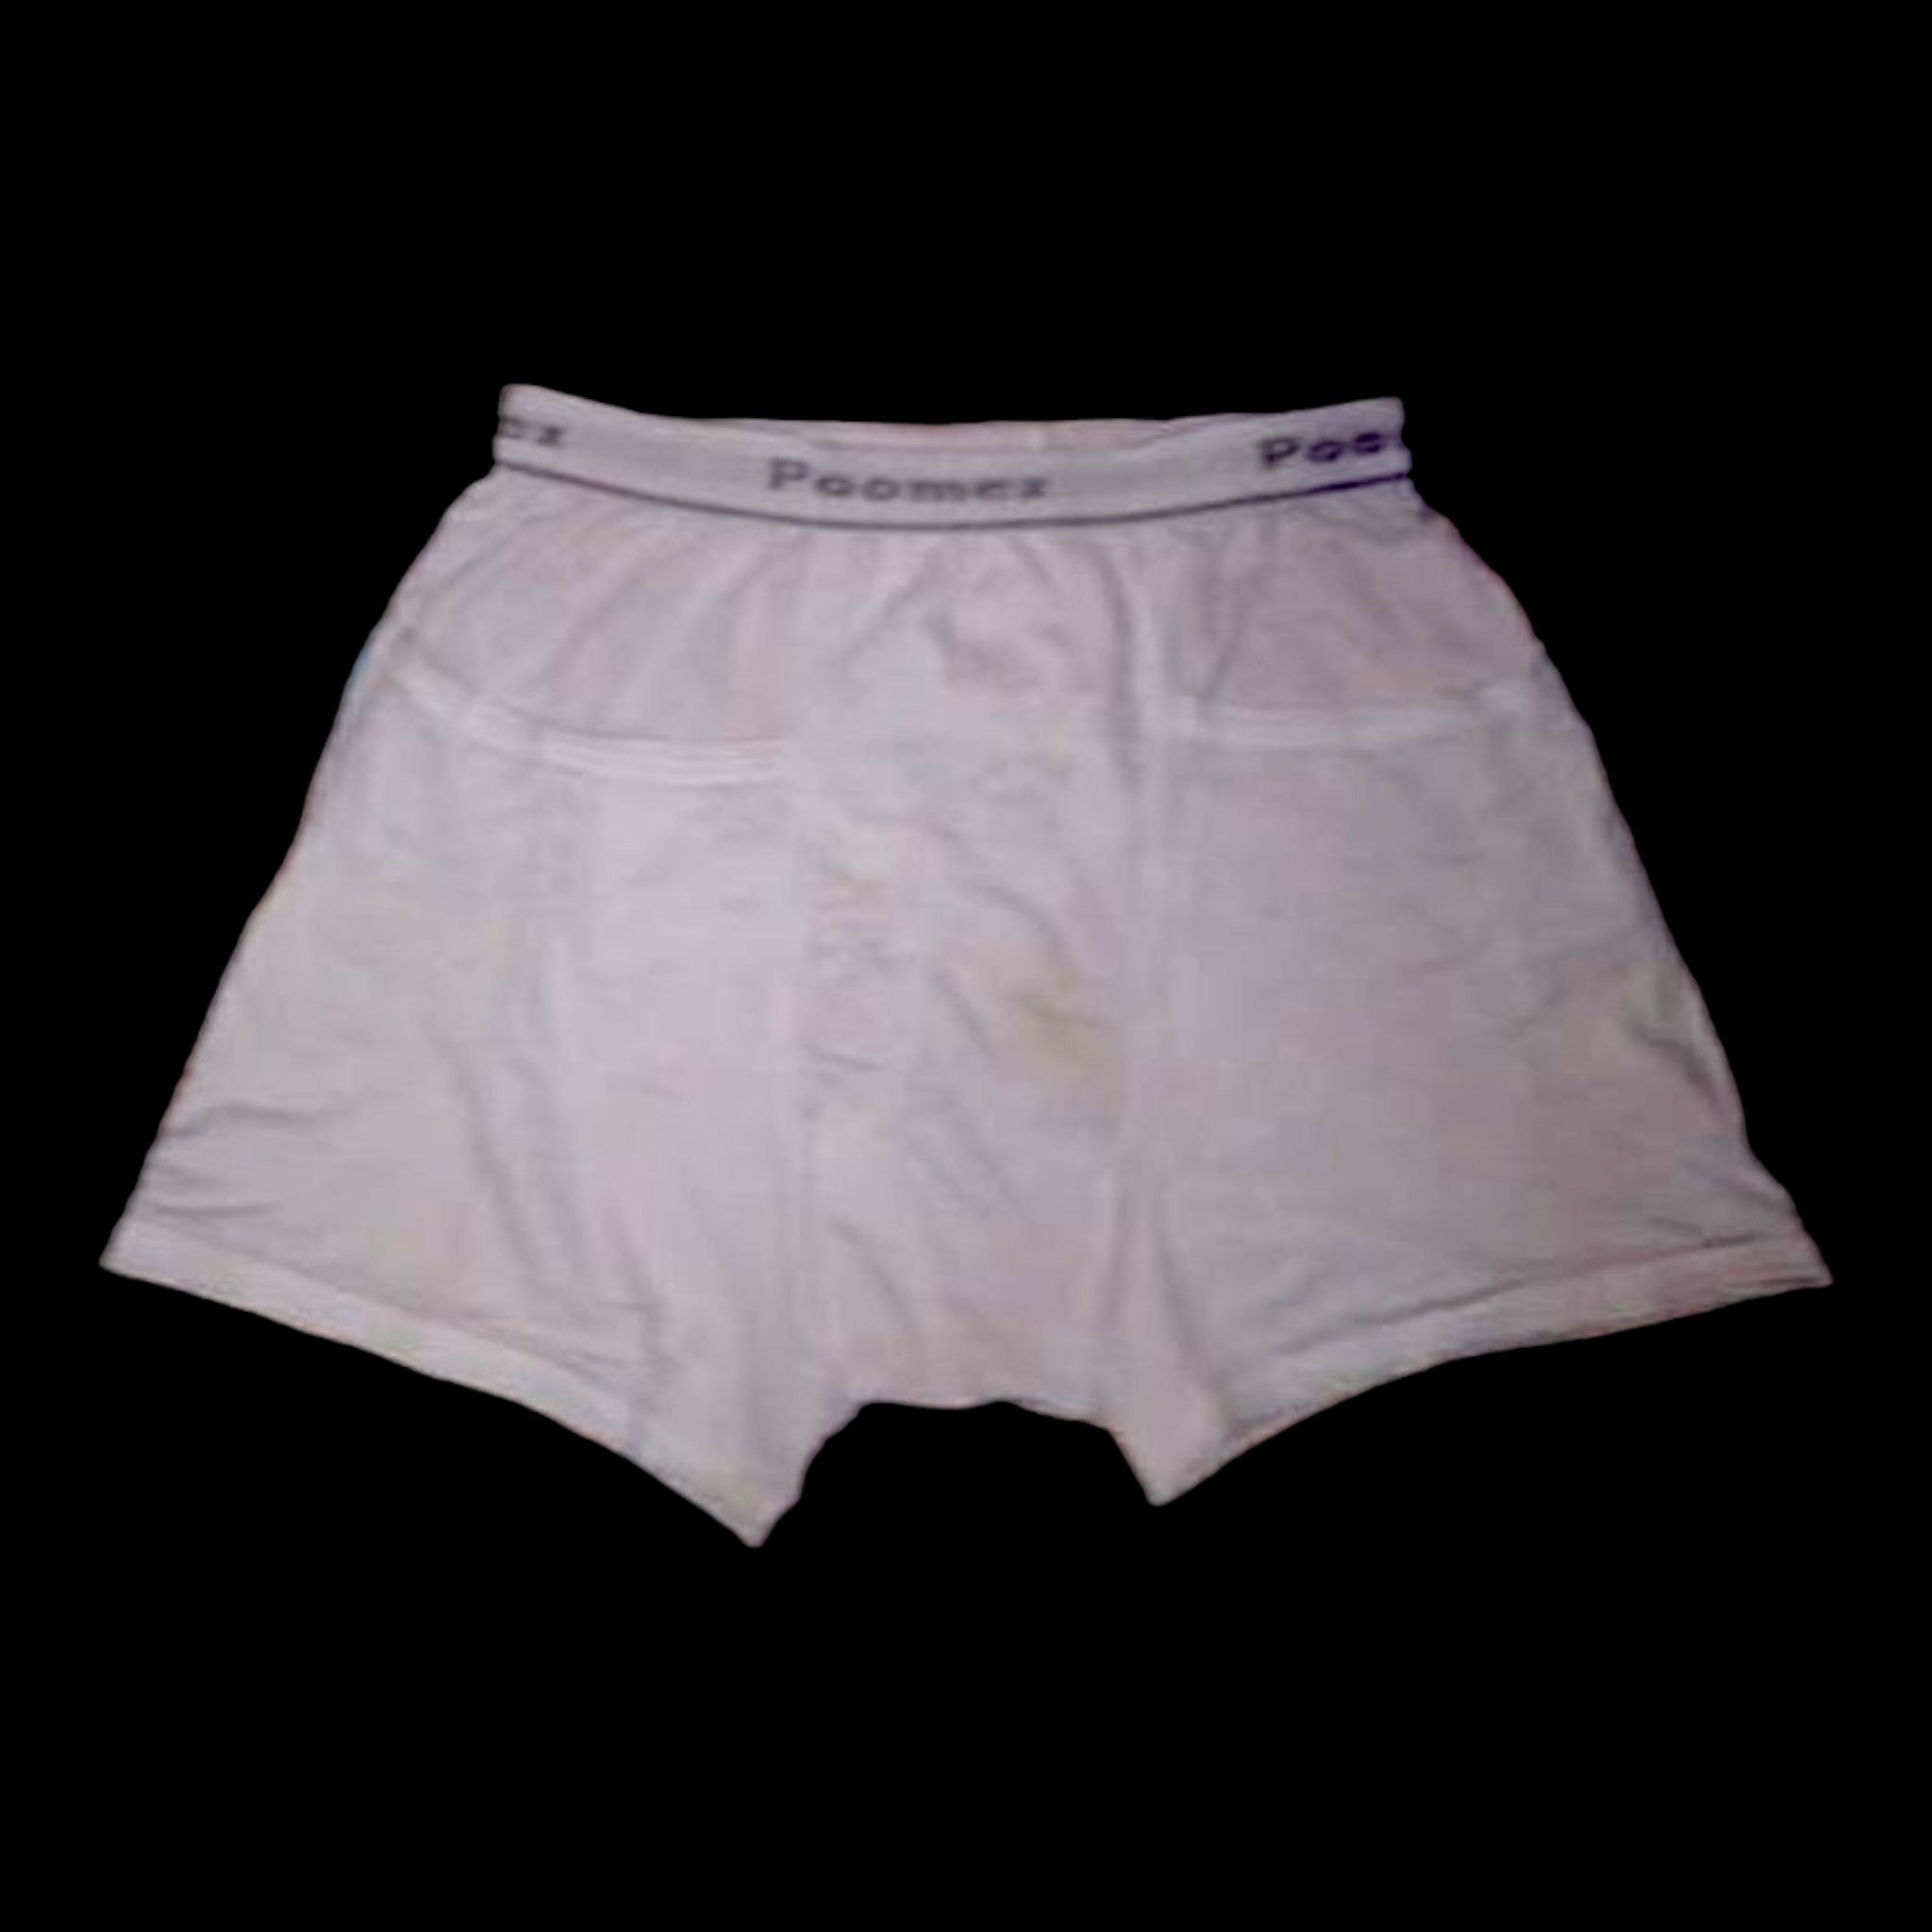 Poomex :: Vests | Brief | Lingerie | Panties | Kidswear | Pooomex-Special  Panty (Pack of 3) 03